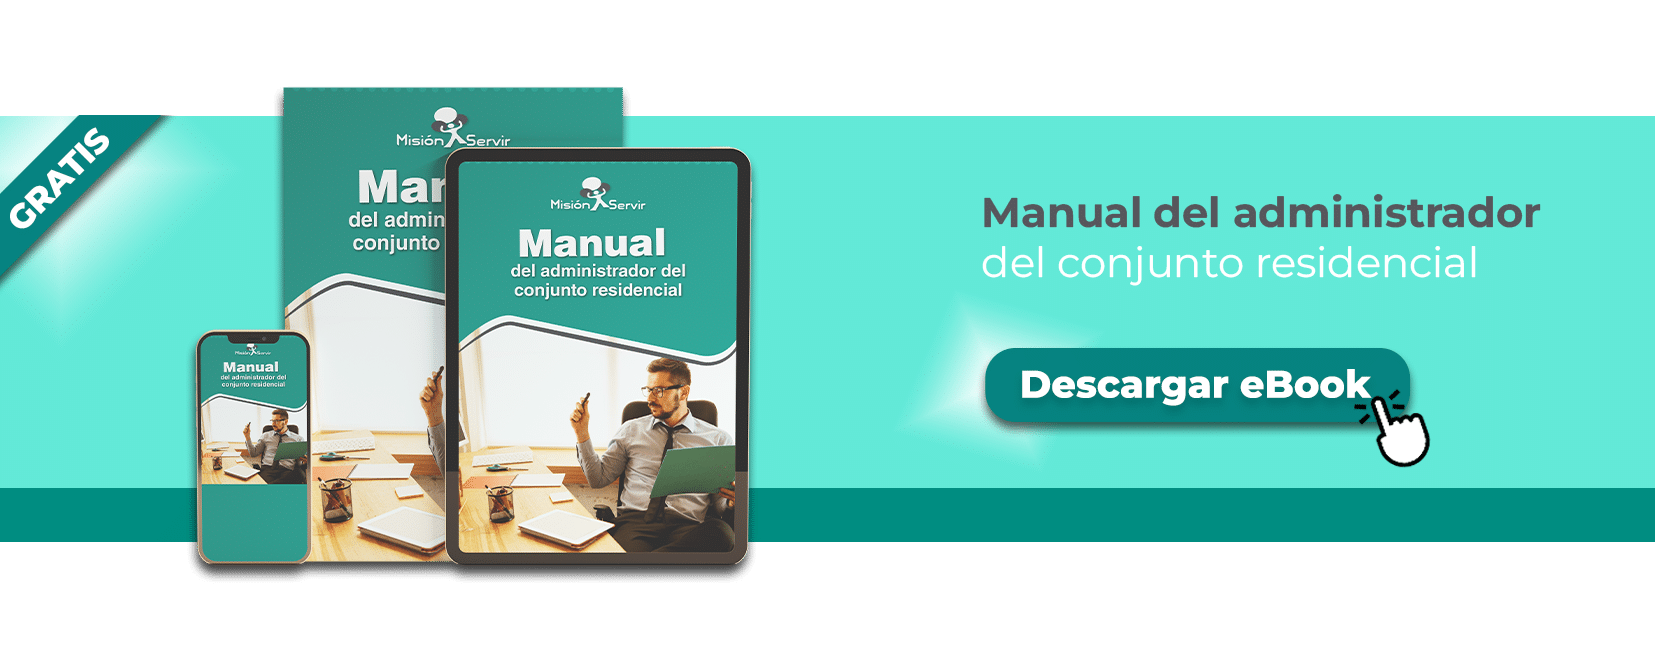 manual del administrador para supervisar profesionales de limpieza.